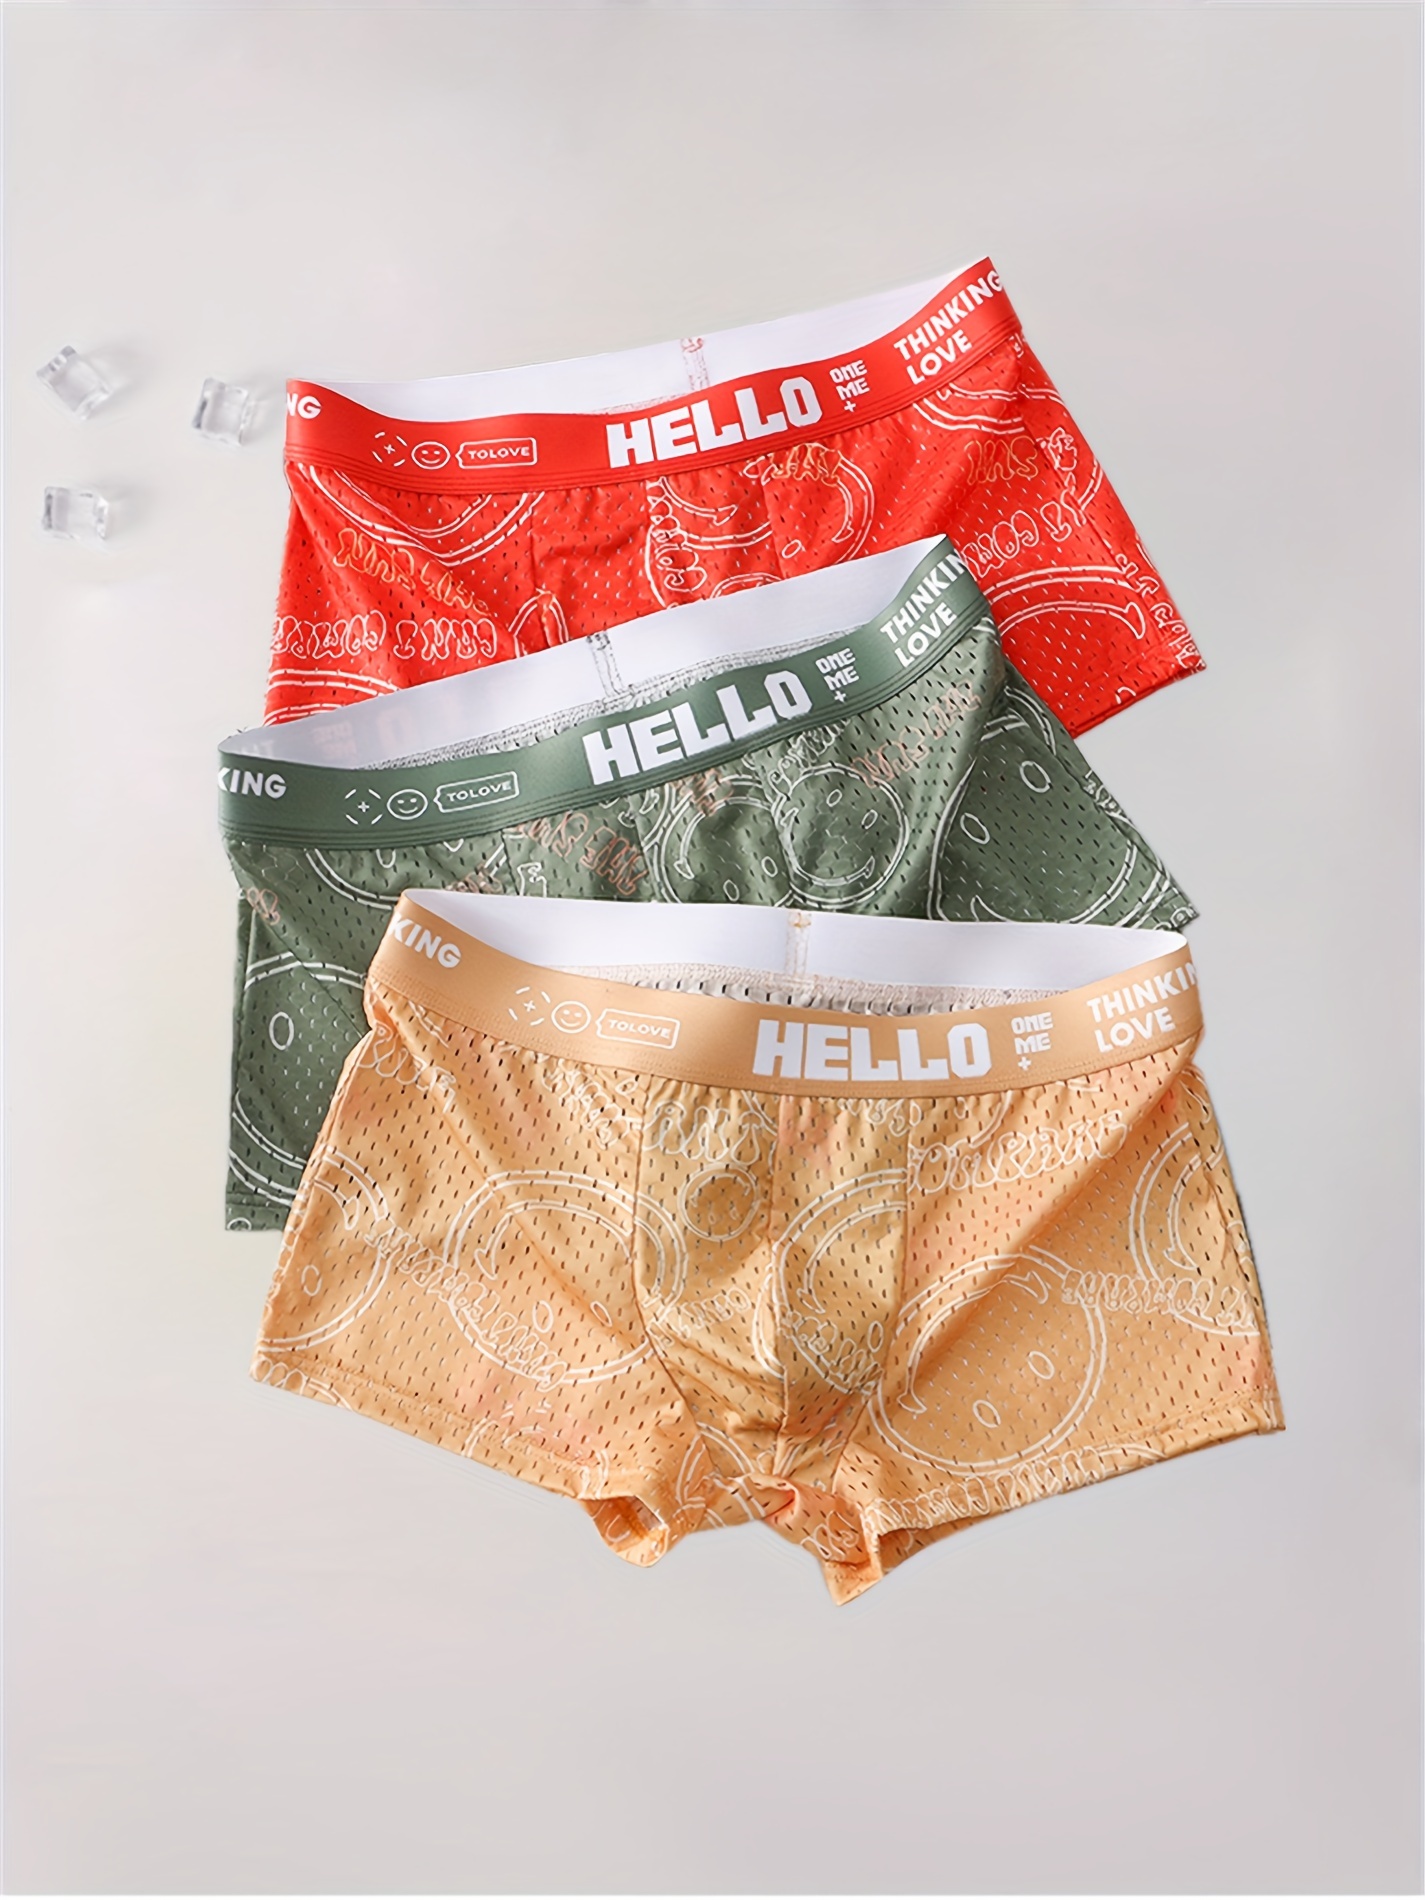 Ethika Boxer Briefsmen's Cotton Boxer Briefs 5-pack - Comfortable  Low-waist Underwear